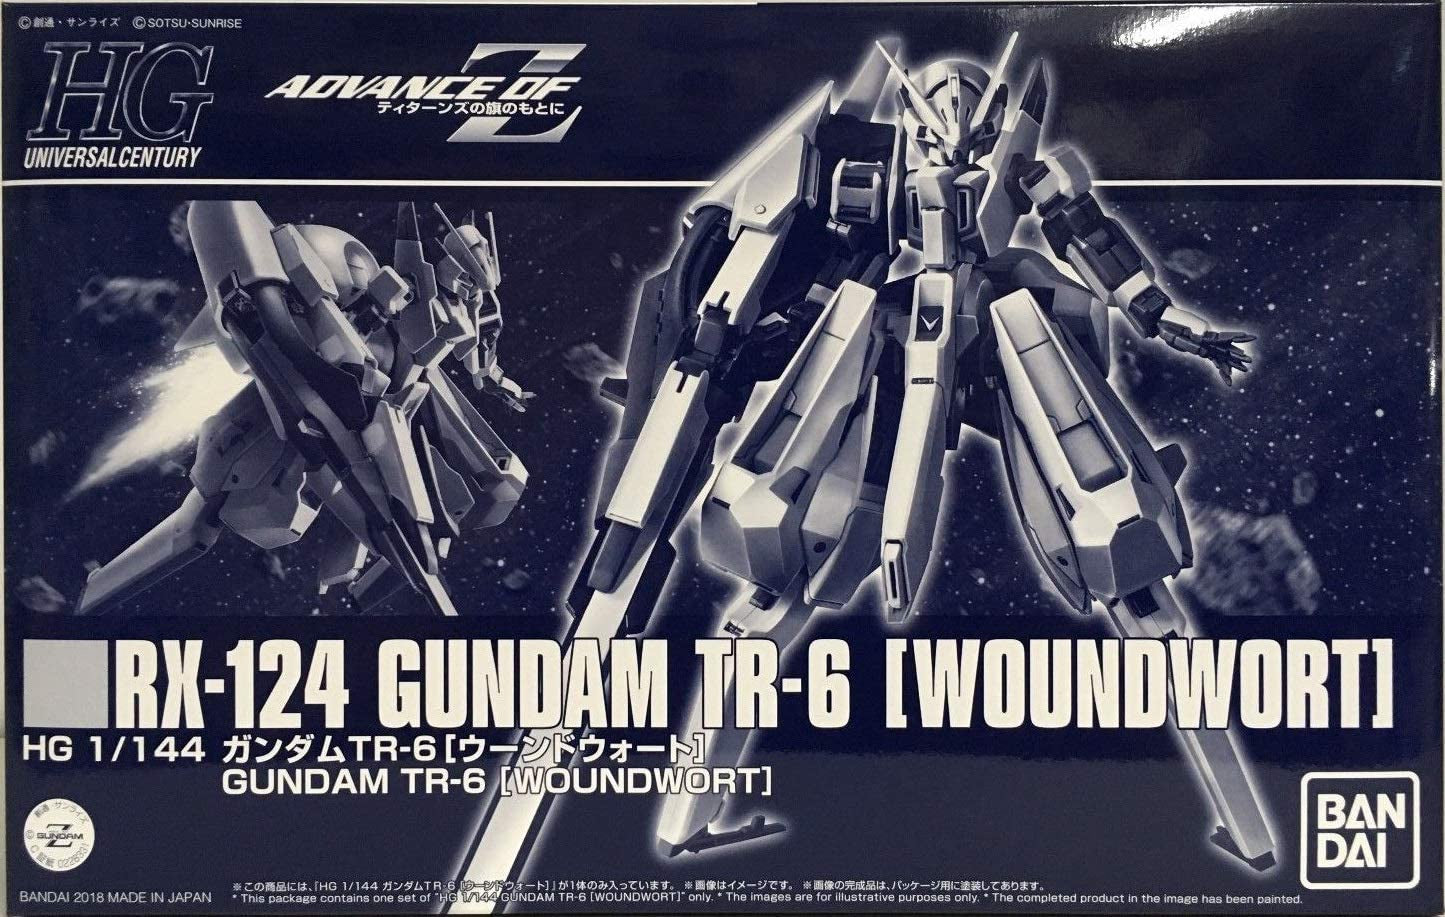 HGUC 1/144 RX-124 Gundam Woundwort #5059023 by Bandai